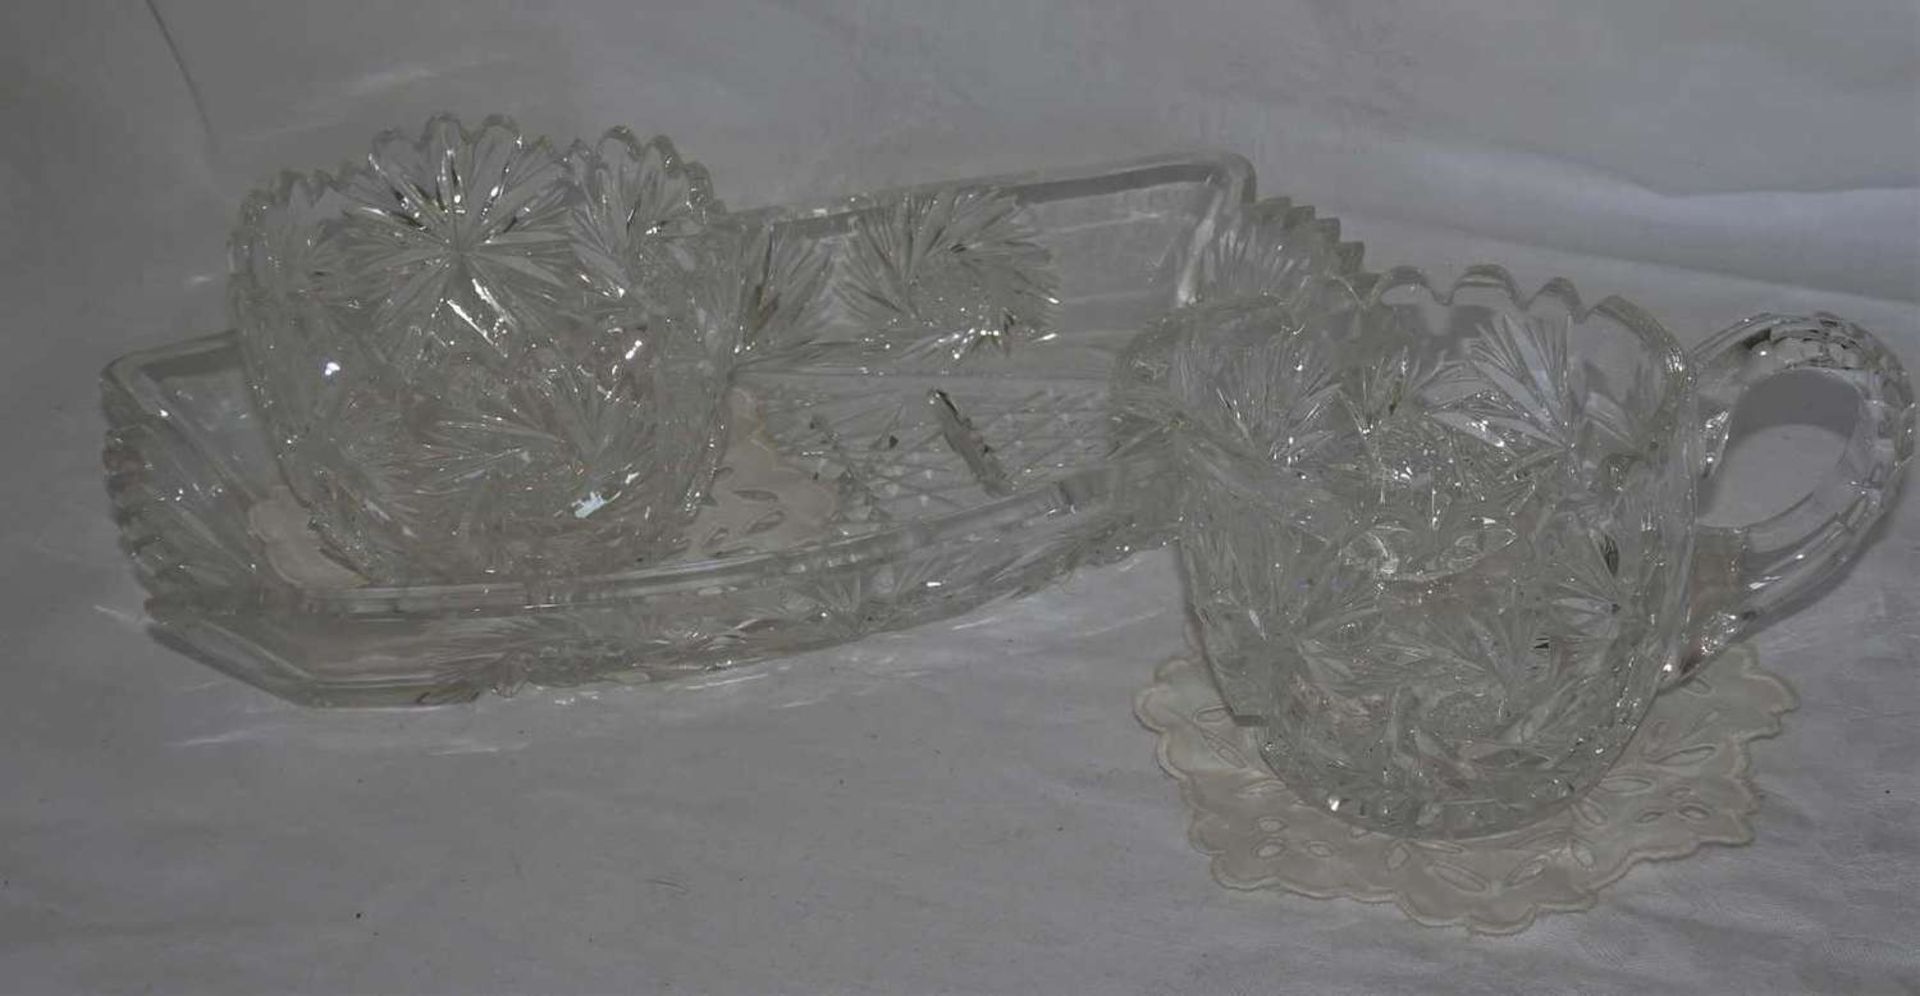 Lot Kristallglas, dabei 1 Kännchen, 1 kleine Vase, sowie 1 Platte. Guter Zustand.Lot of crystal